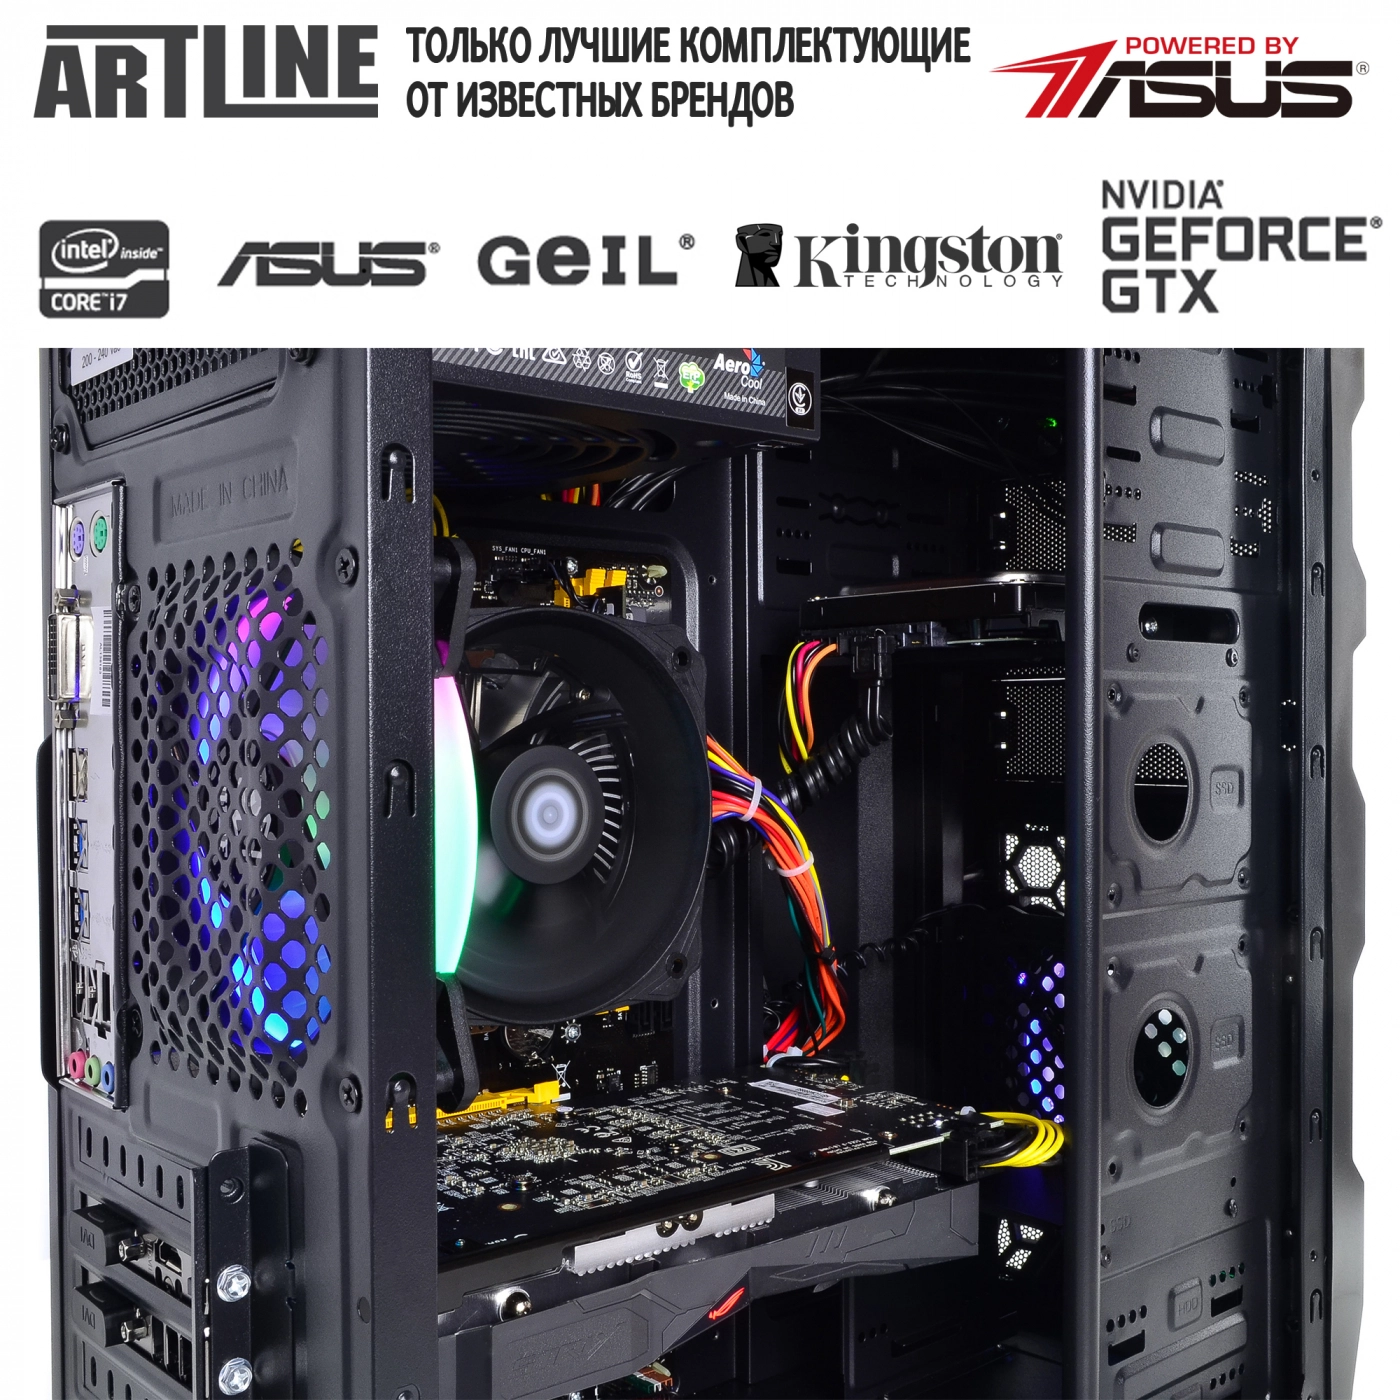 Купить Компьютер ARTLINE Gaming X35v28 - фото 6